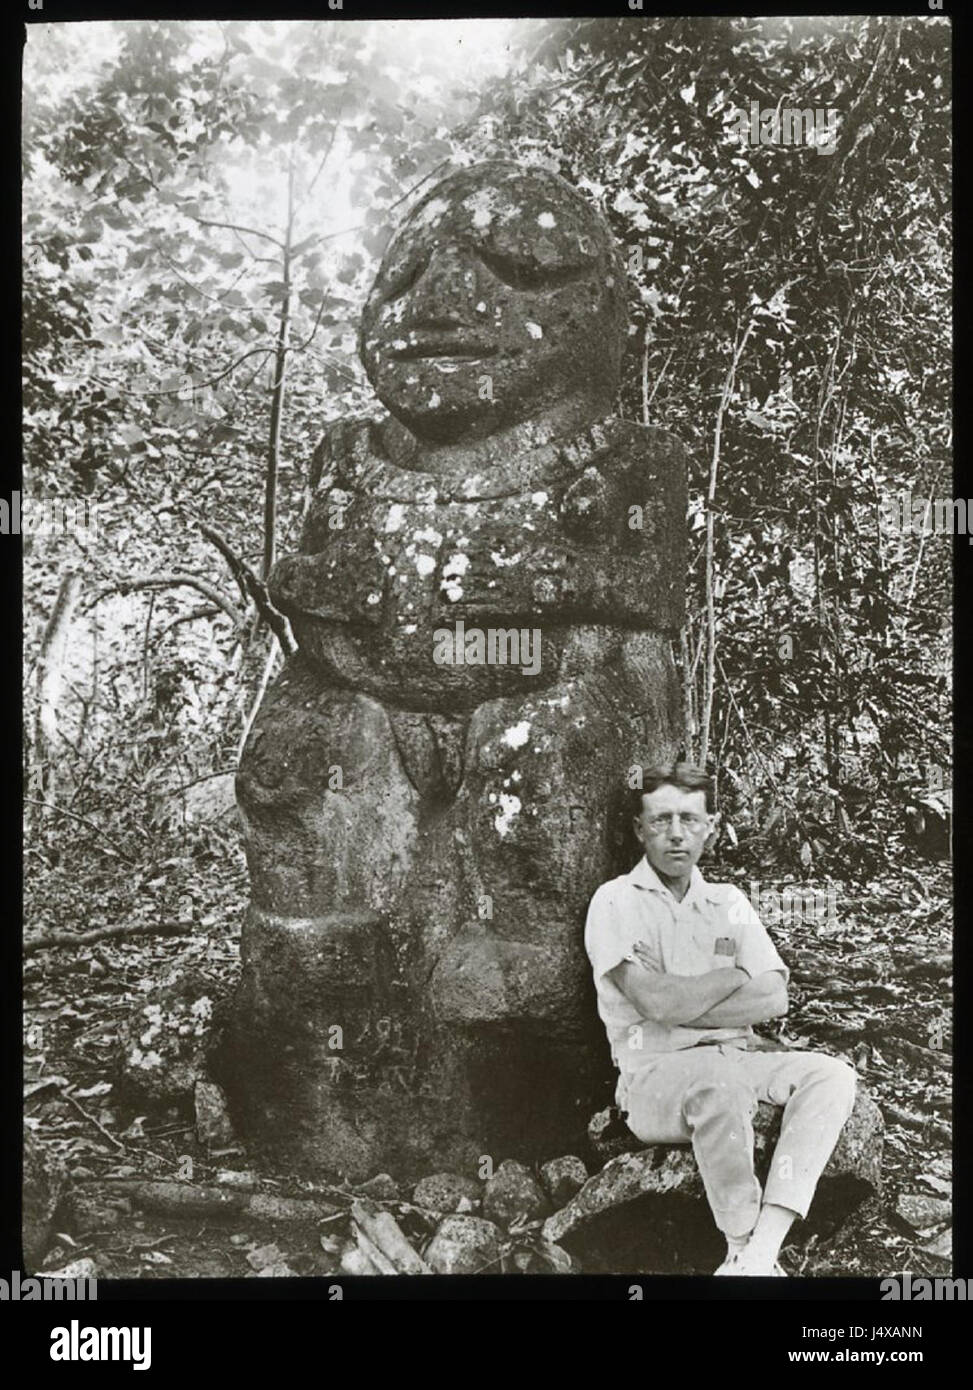 Vista di una pietra figura antropomorfa statua, circondato da alberi e fauna e con un uomo bianco seduto accanto a esso, per la scala; Raivavae, Polinesia. Oc,G.T.1672, Mana spedizione in Oriente Polinesia, British Museum Foto Stock